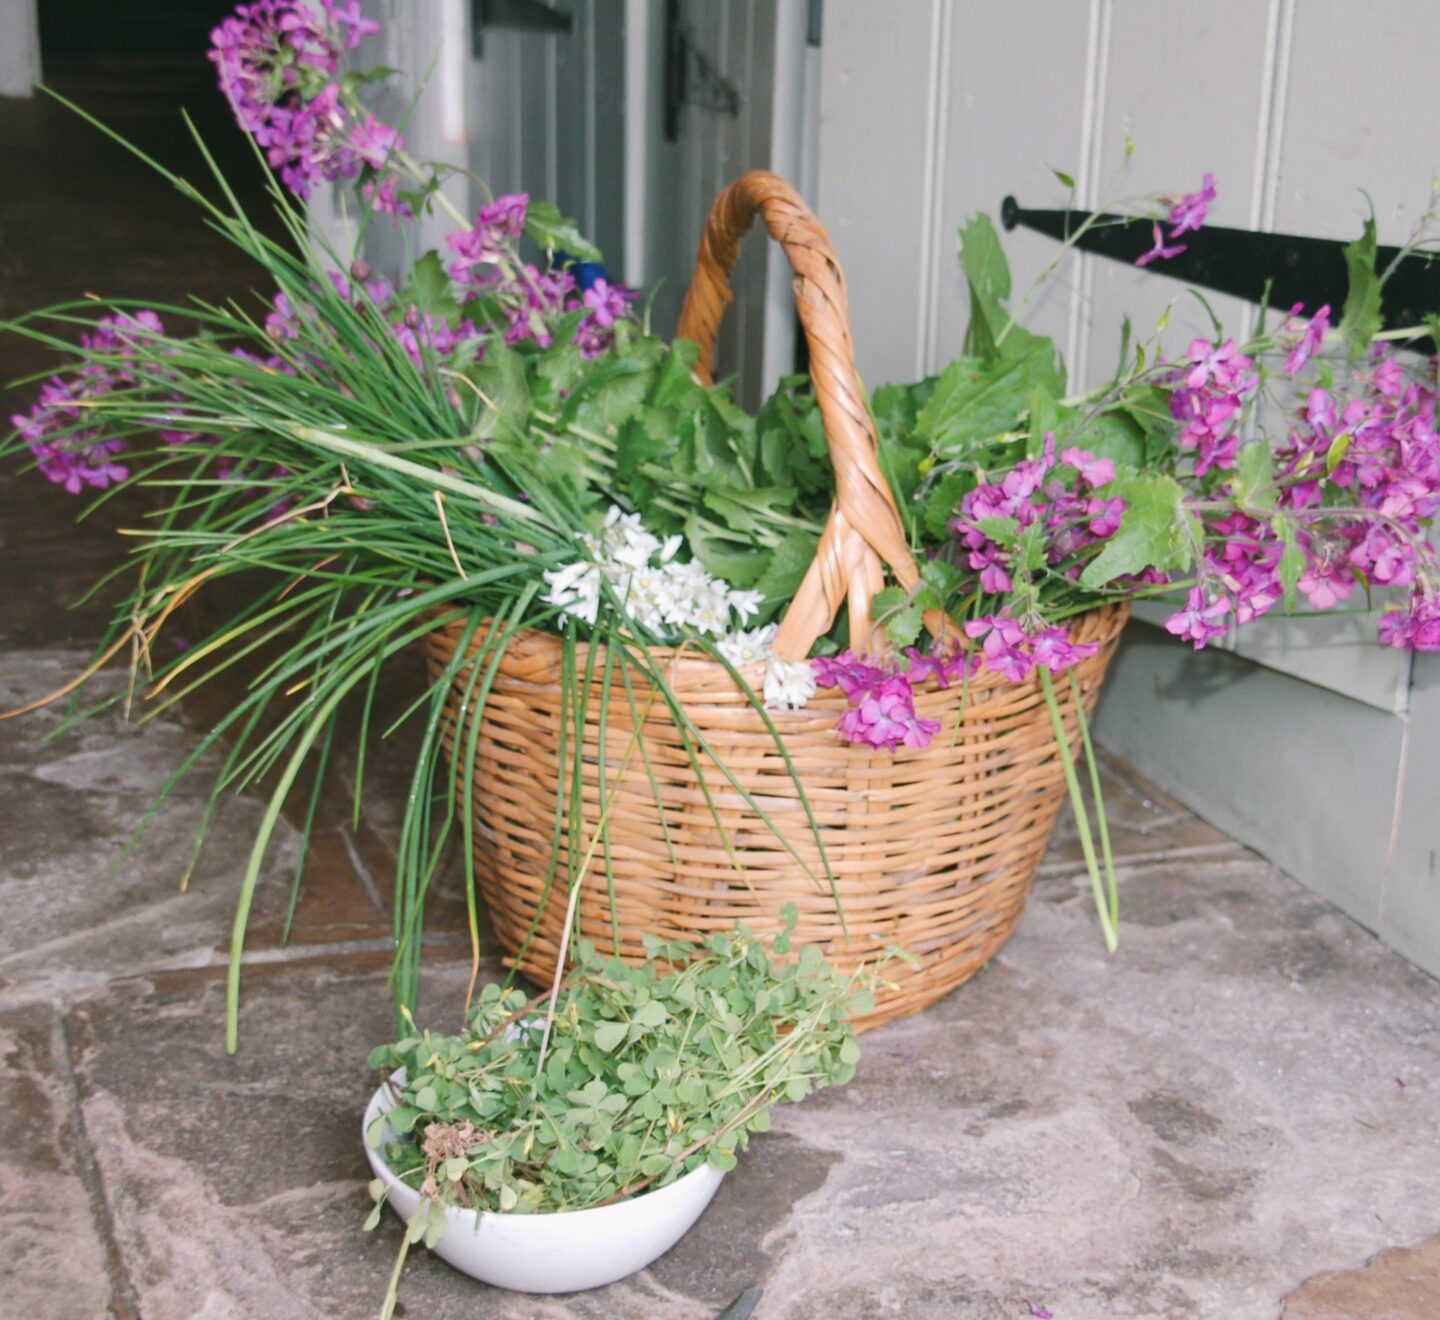 Basket of foraged plants